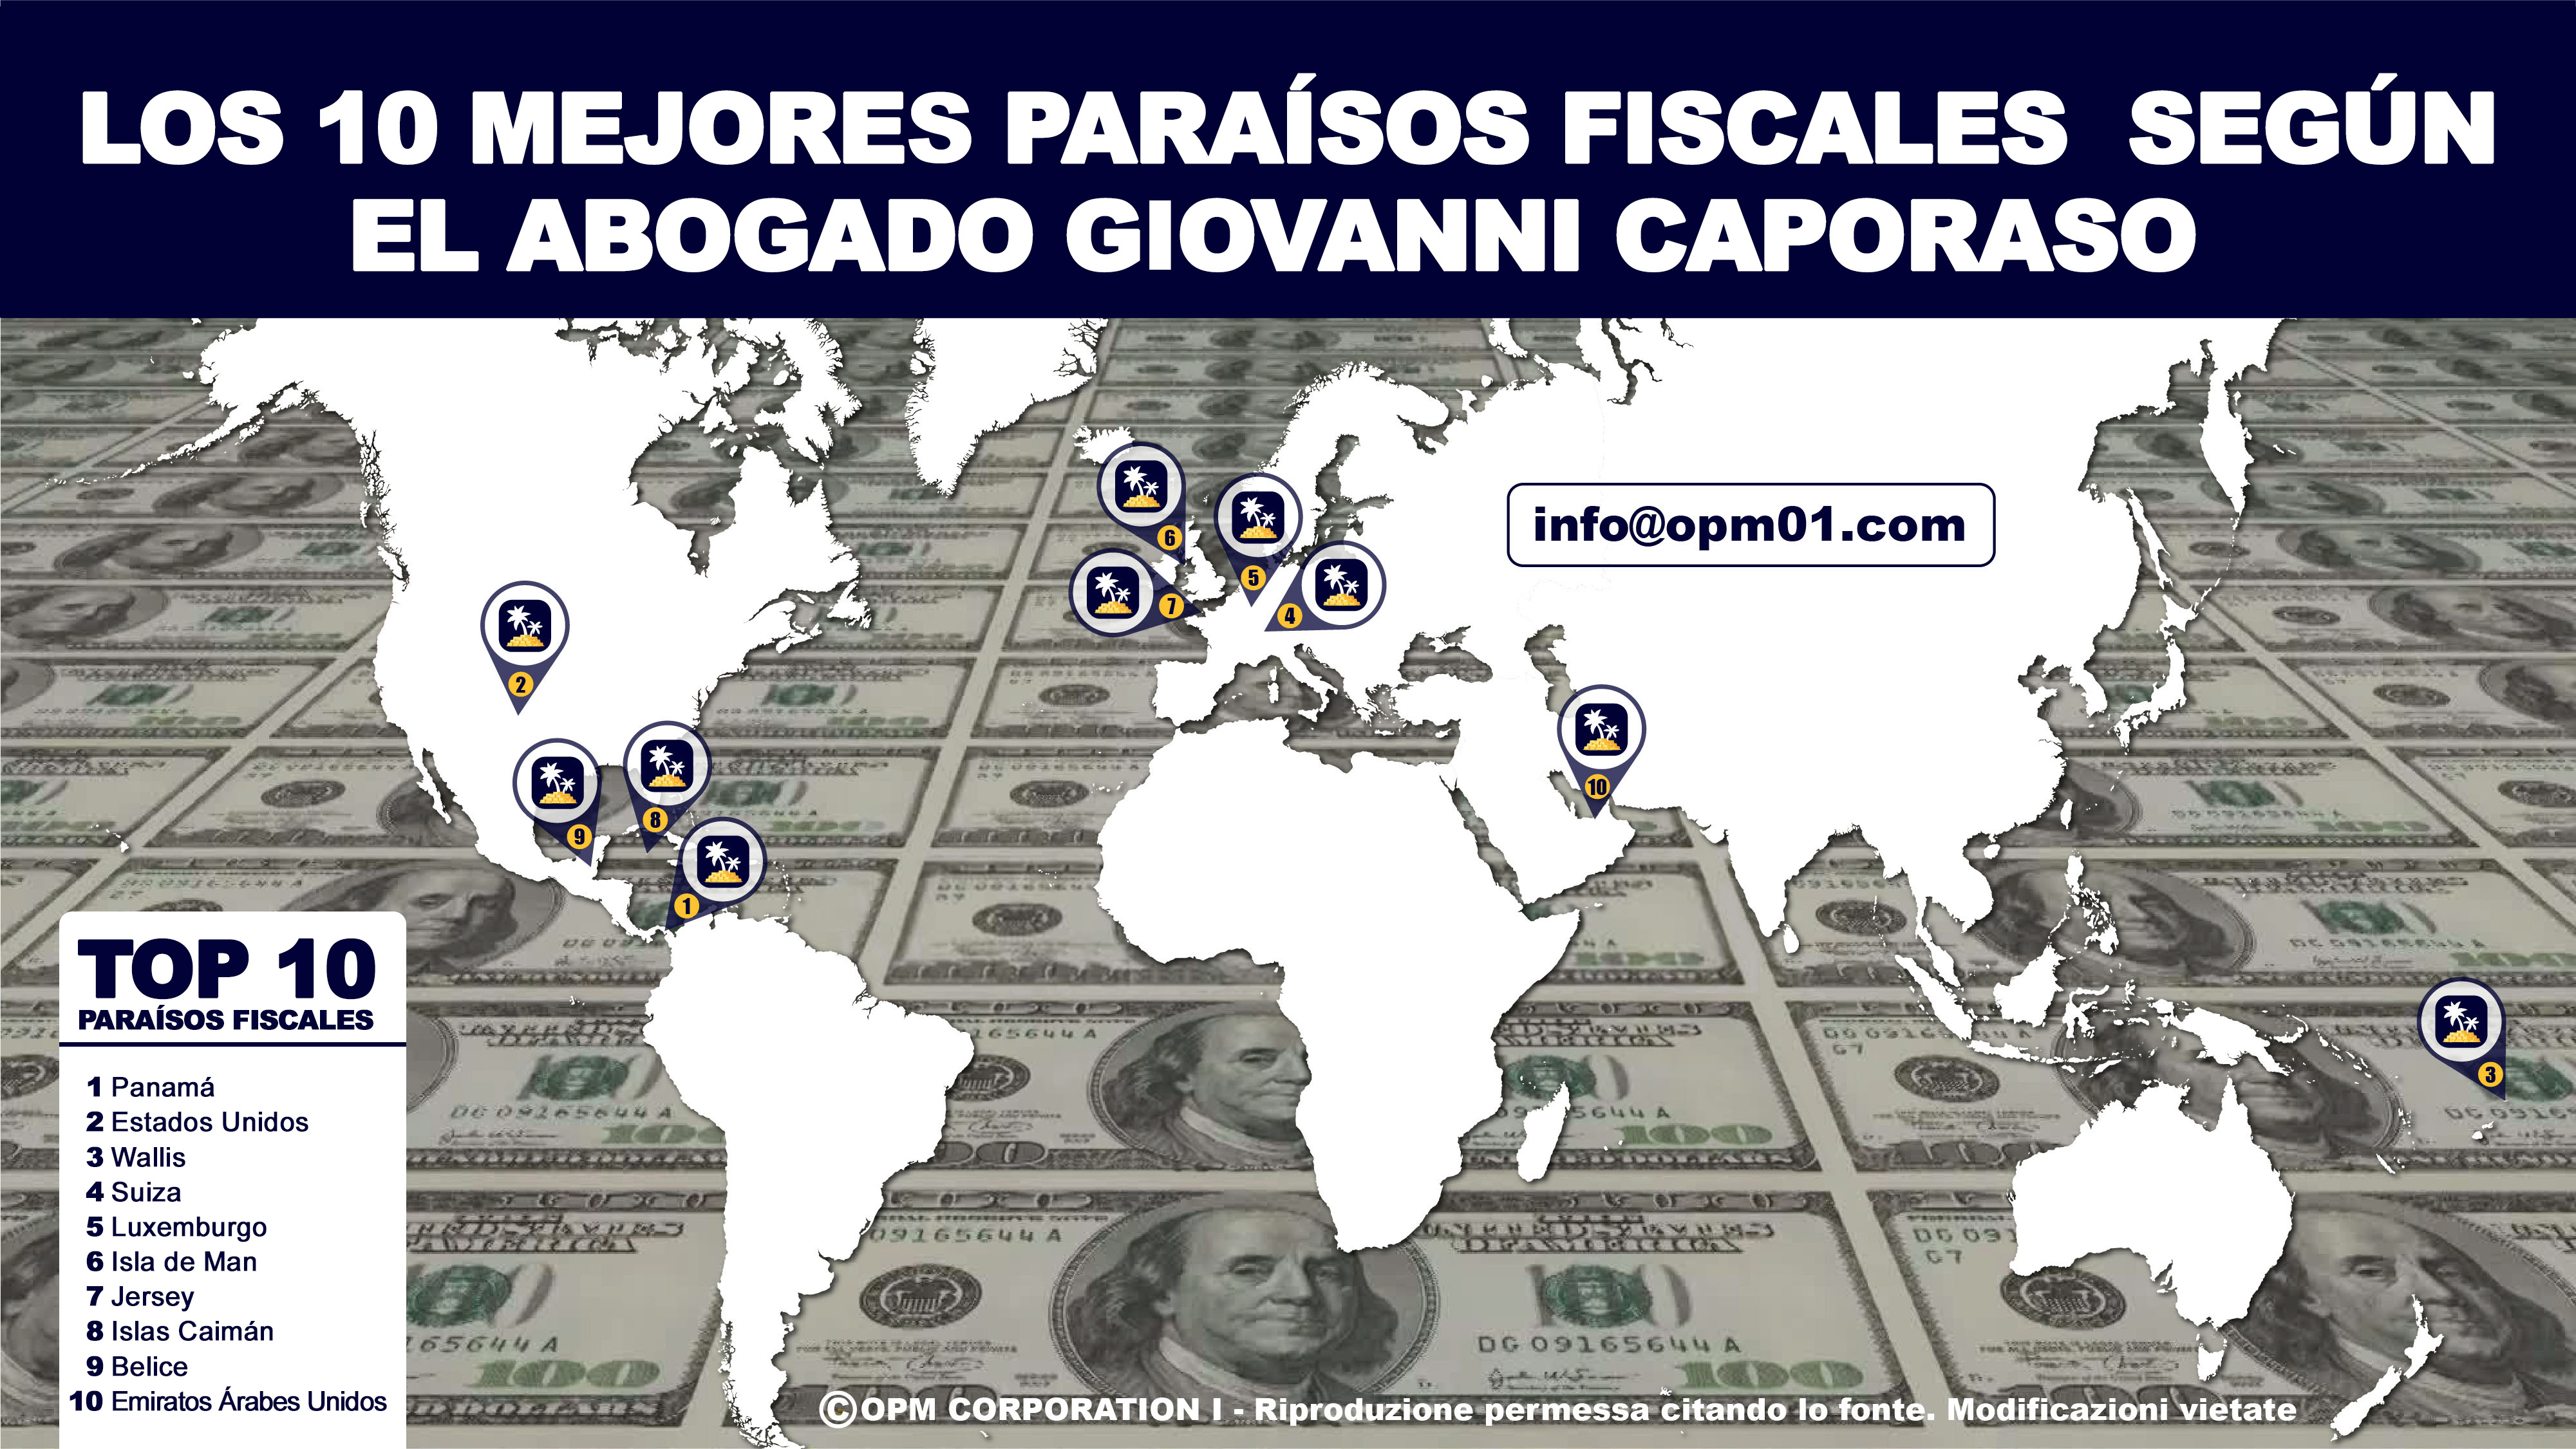 los 10 mejores paraísos fiscales mapa